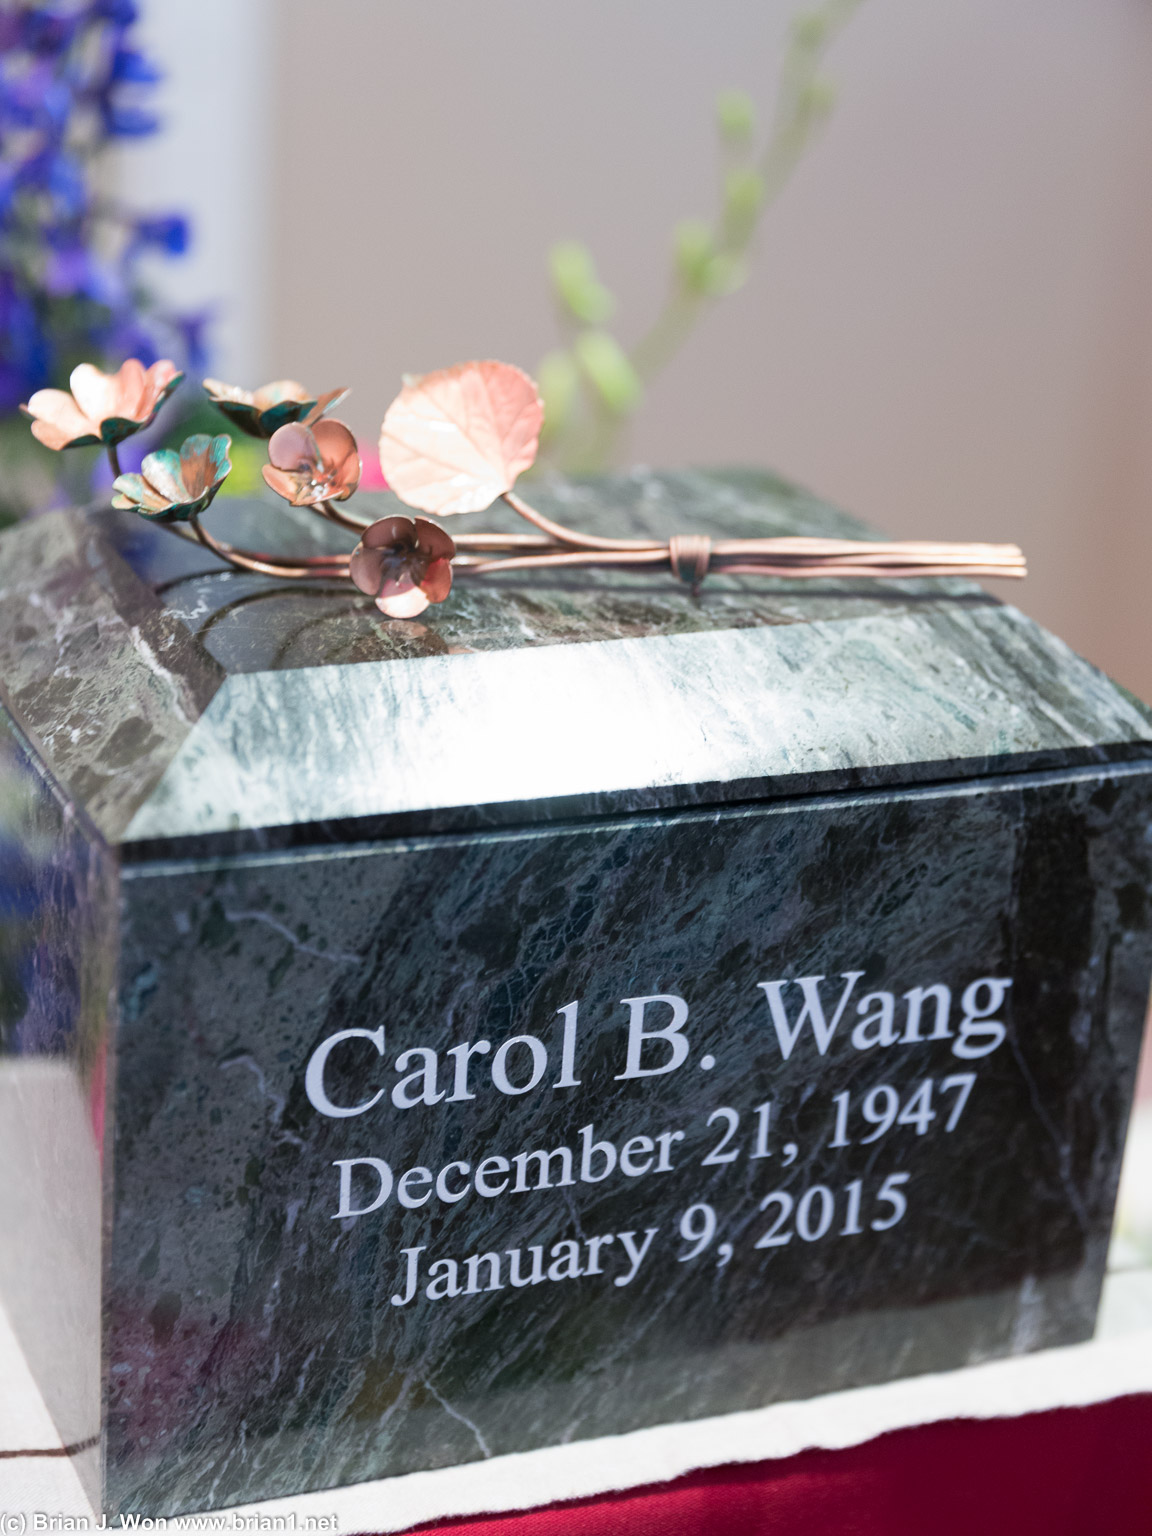 Carol B. Wang, December 21, 1947 - January 9, 2015.